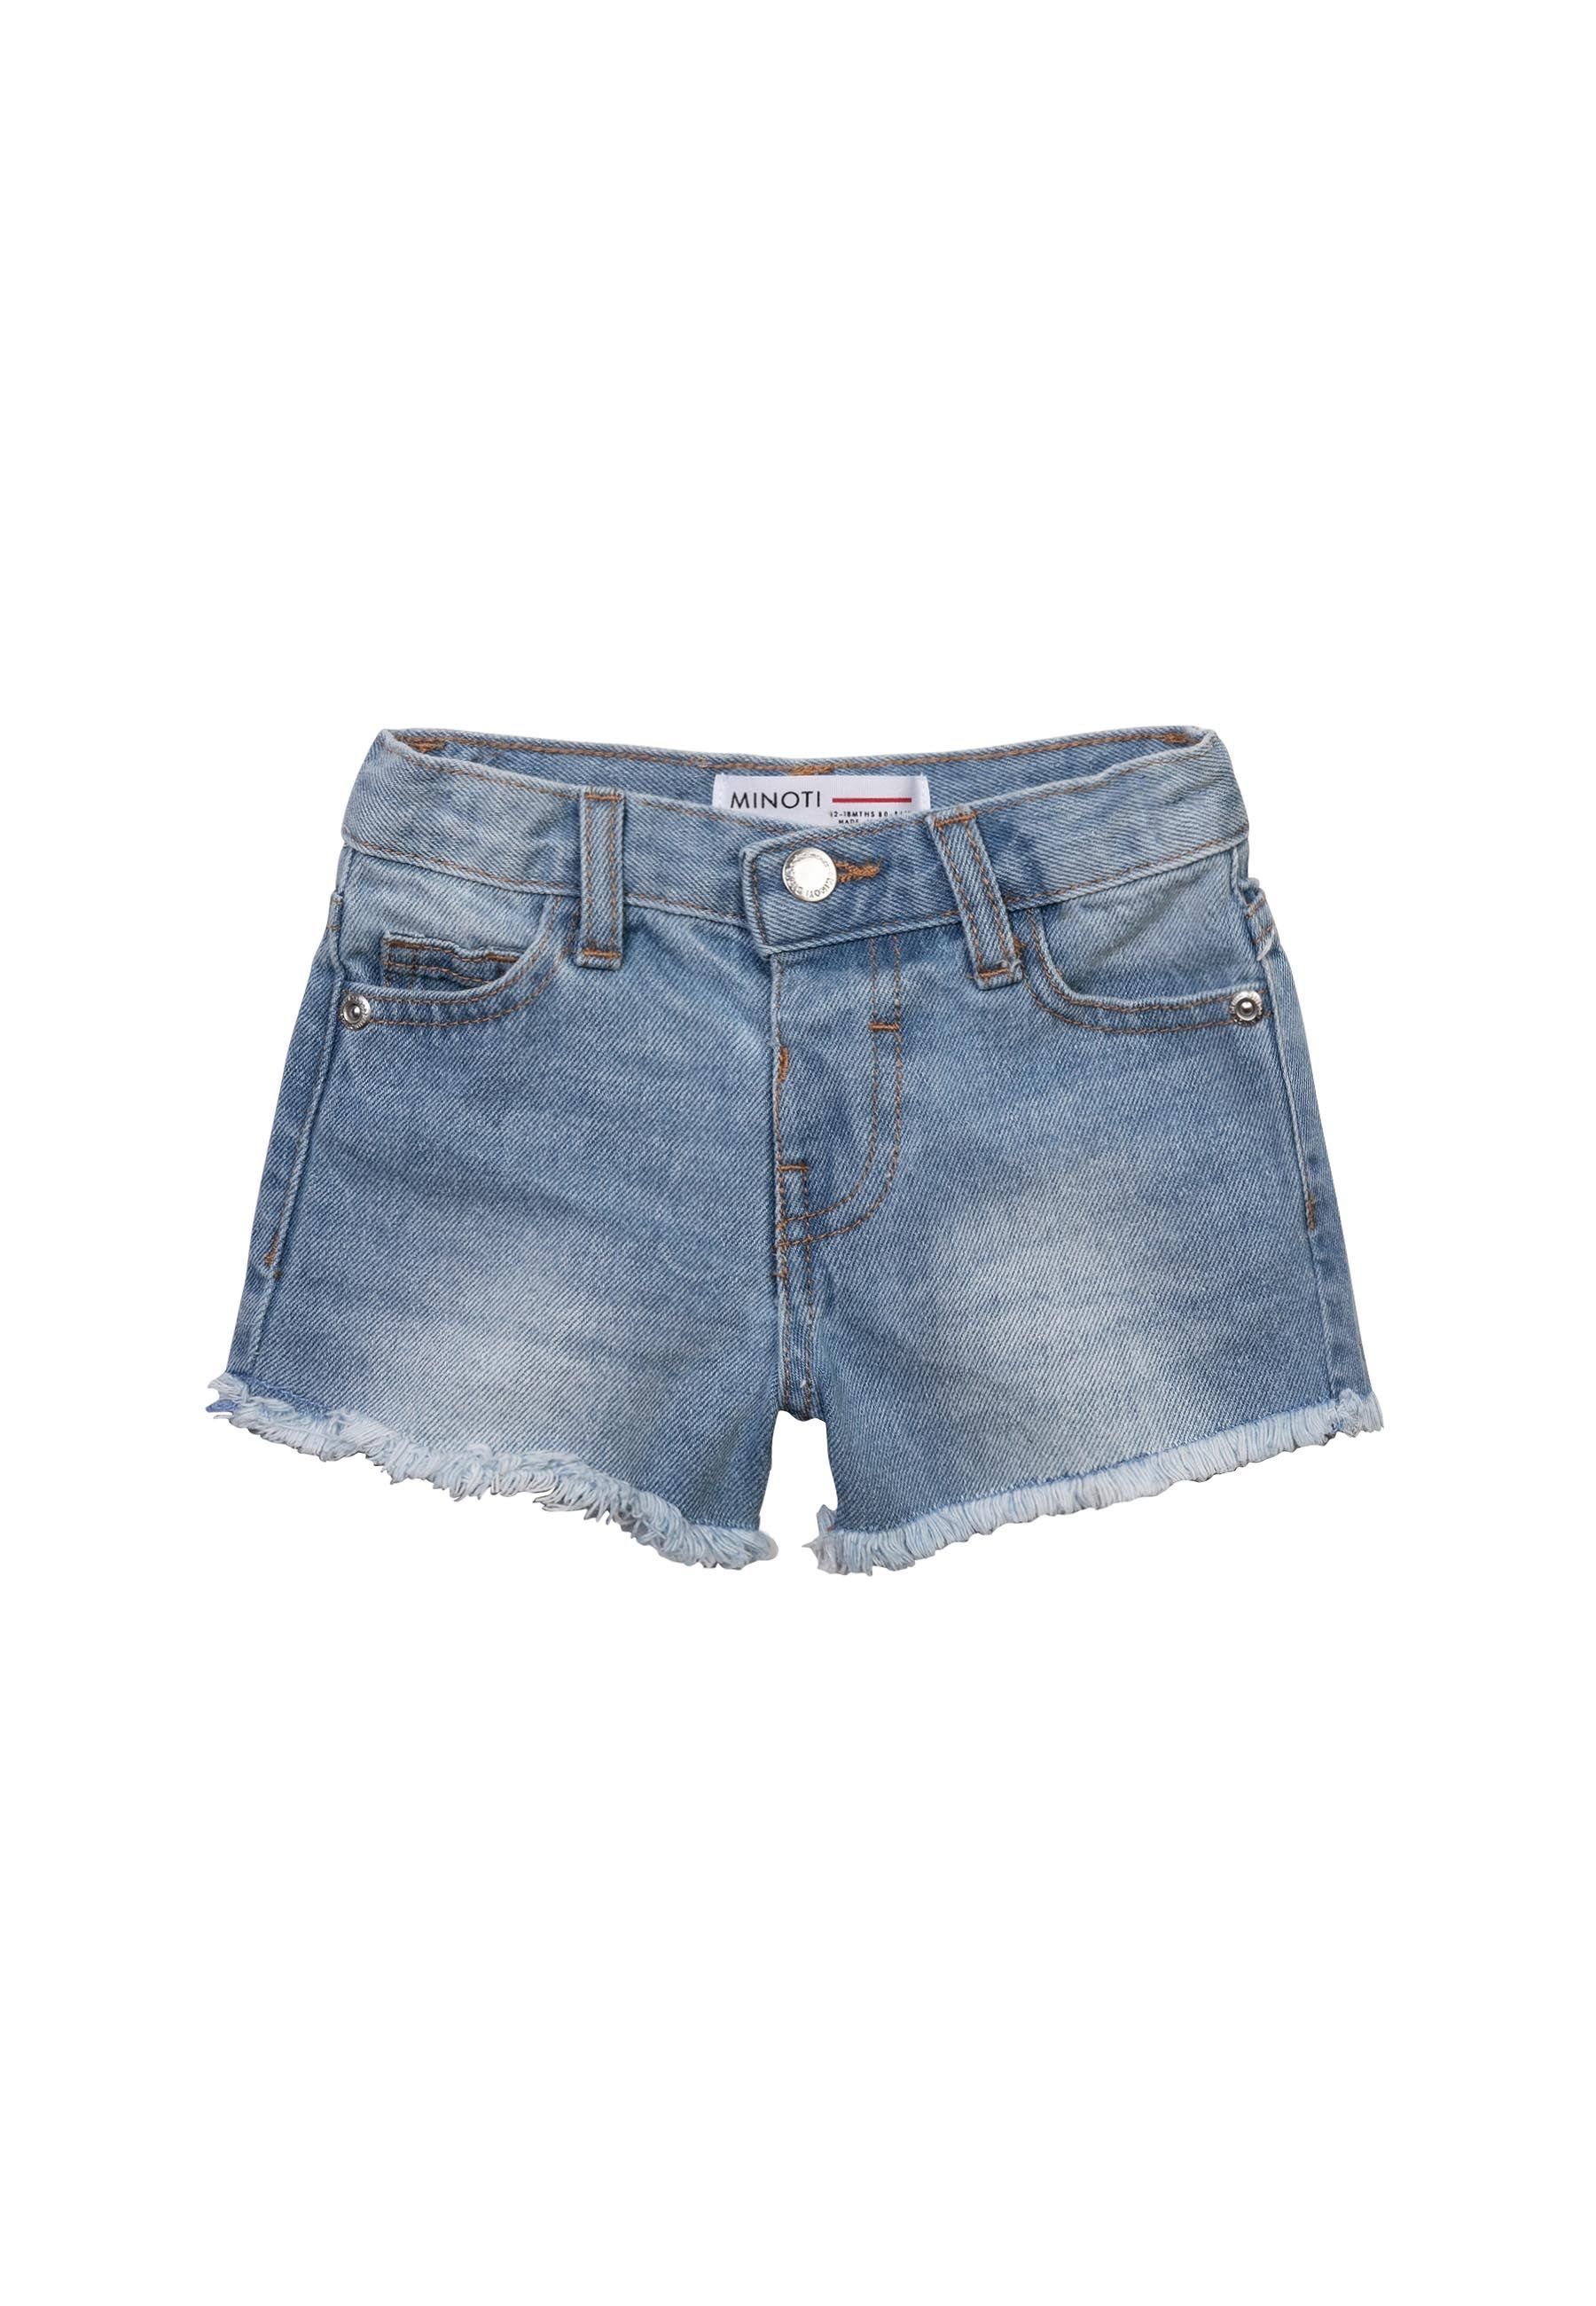 MINOTI Jeansshorts Kurze Jeans Shorts (1y-14y) Denim-Hellblau